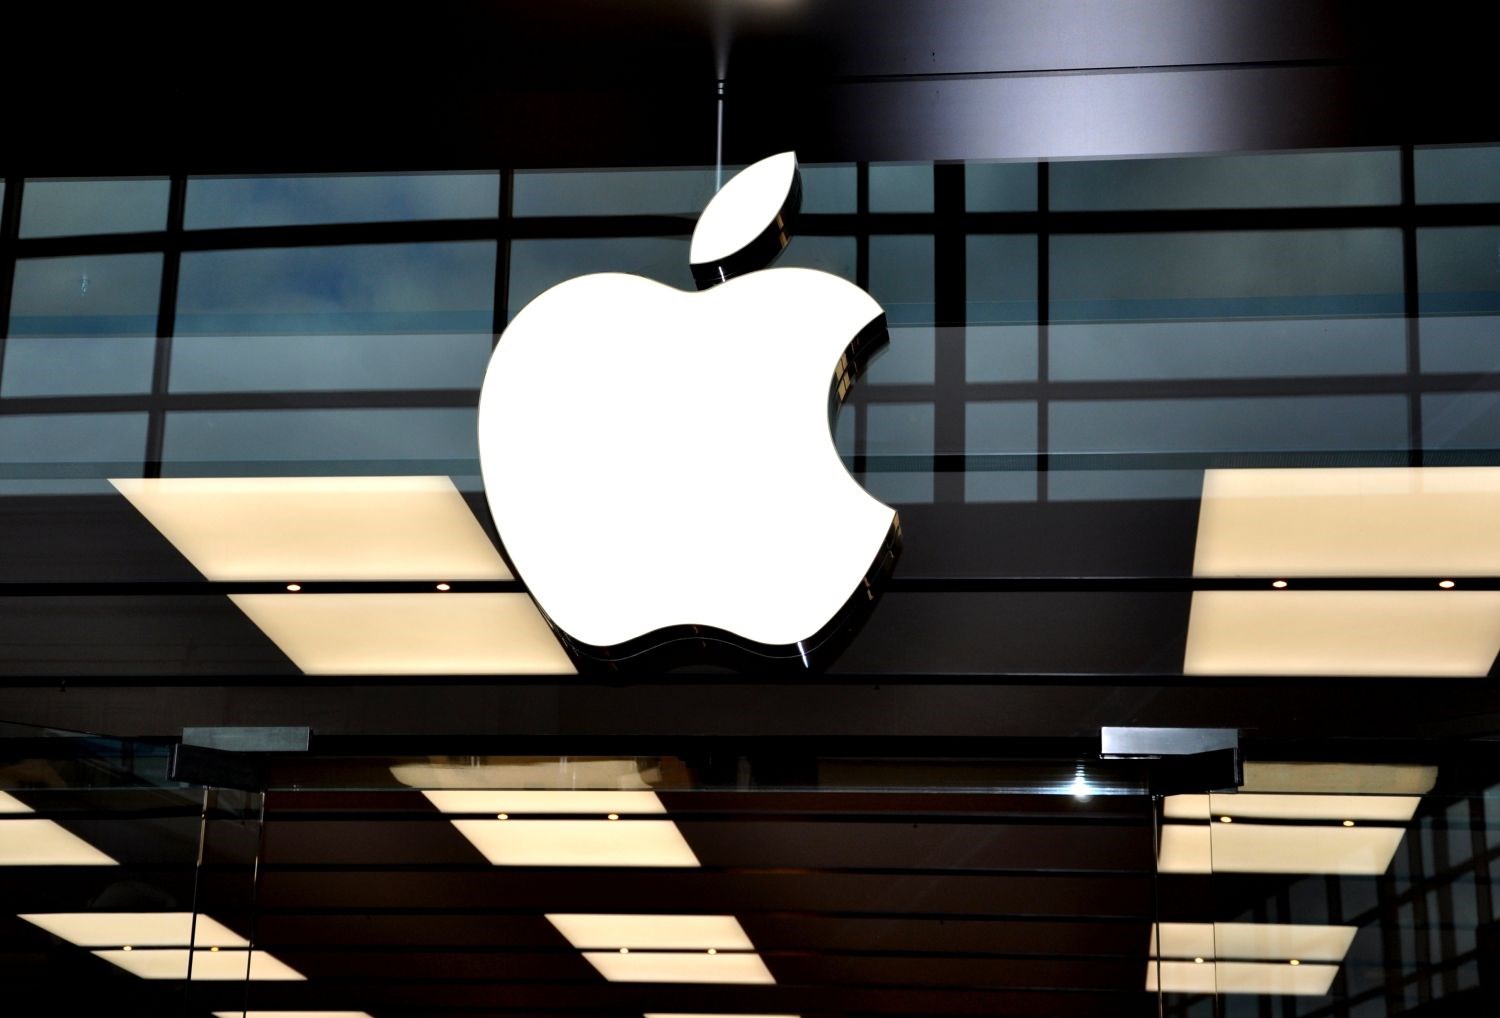 Apple abarttı: Elma görselini sadece kendisi kullanmak istiyor